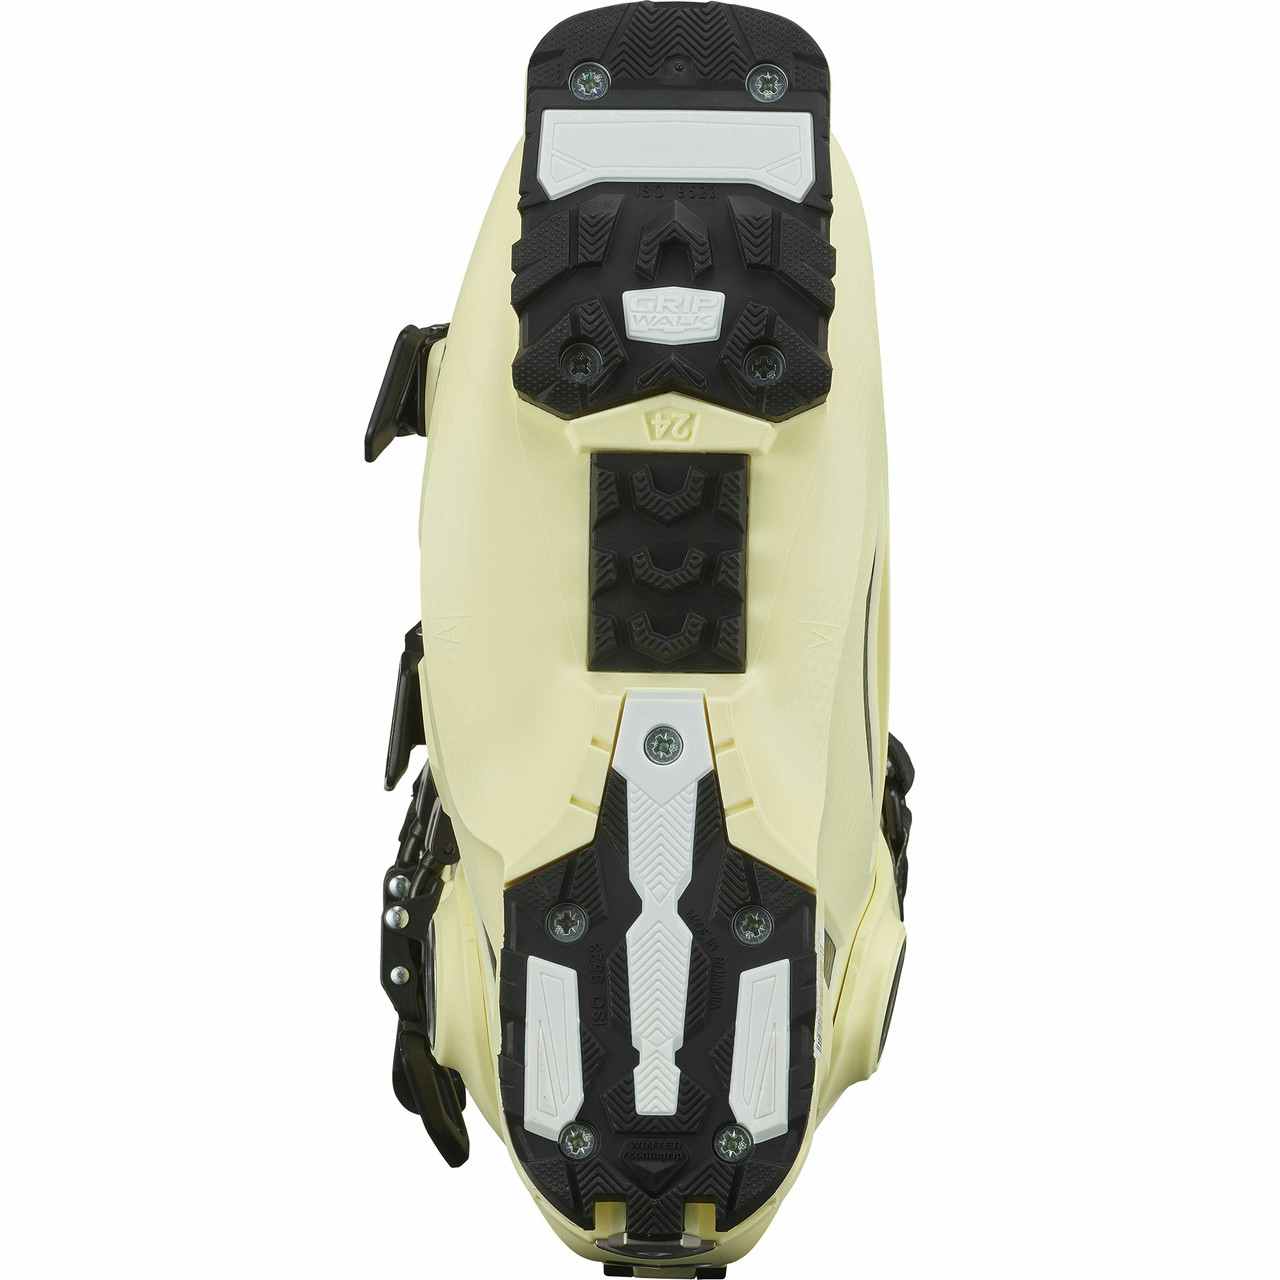 Shift Pro 110 W AT Ski Boots Tender Yellow/Black/White